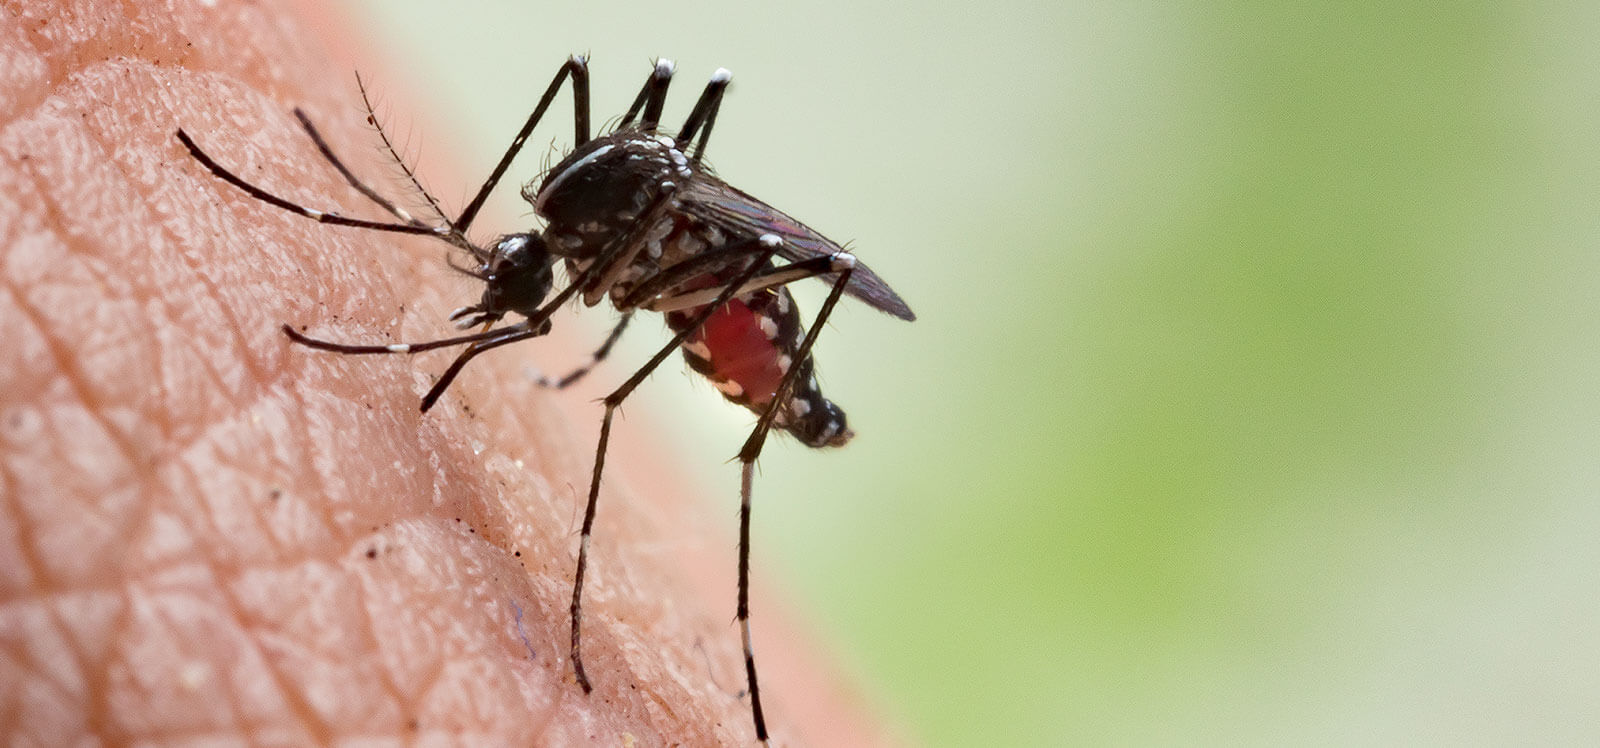 Komary znów dają się we znaki. Jak radzić sobie z ukąszeniami? - Zdjęcie główne